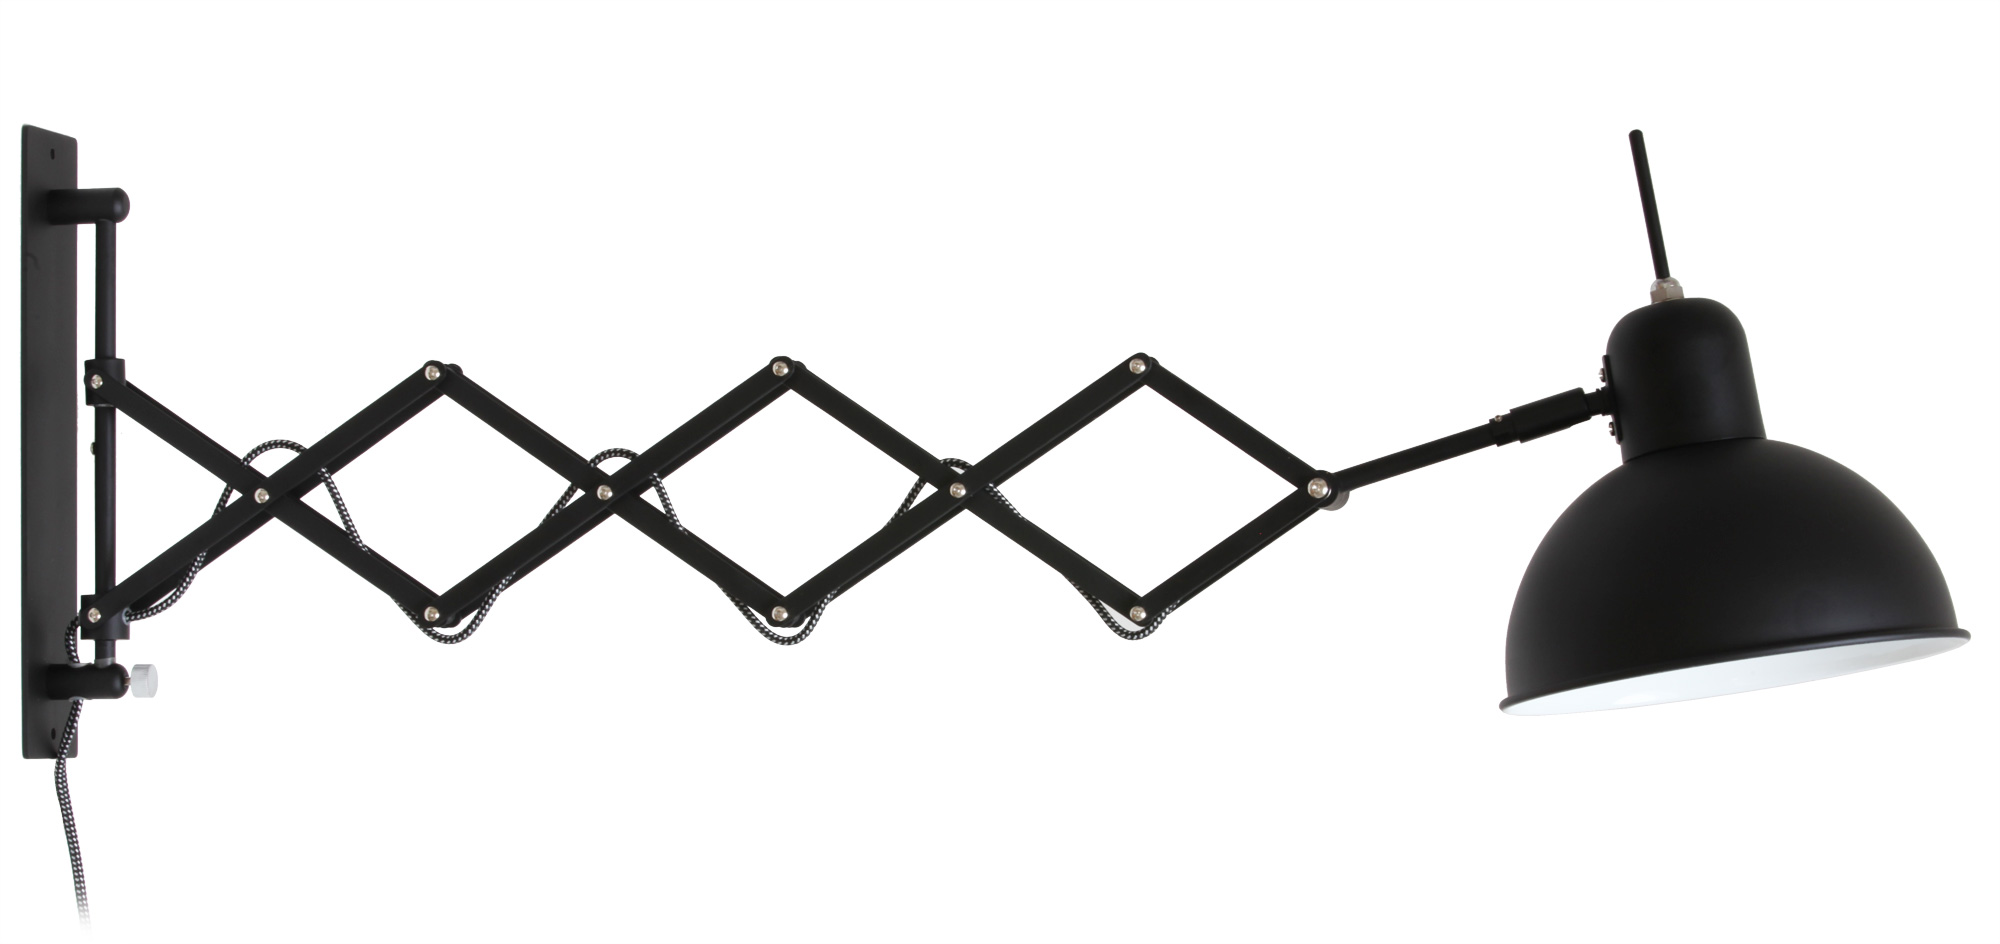 Bauhaus-Scherenleuchte aus Stahl in Schwarz: Die verwindungssteife Schere ist ausziehbar bis max. 85 cm Gesamtausladung.